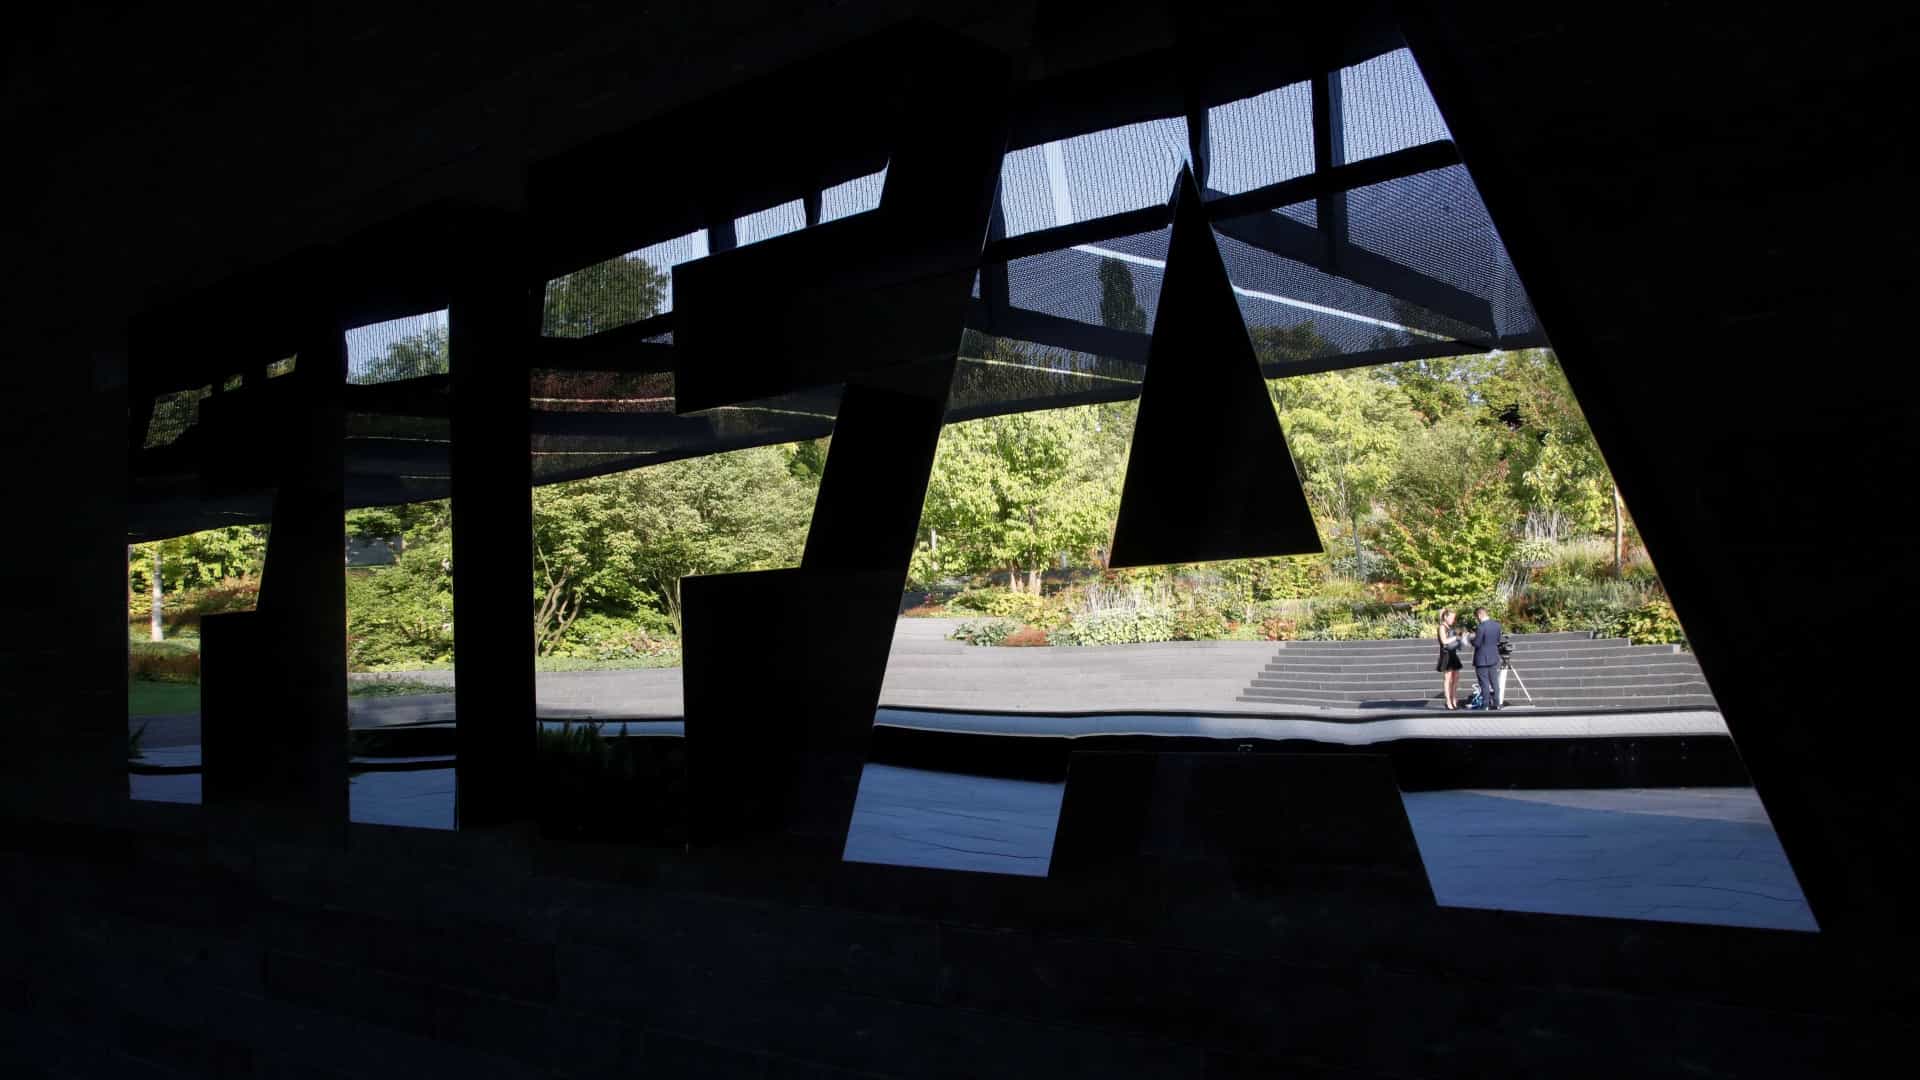 Fifa muda data para inscrições no Mundial e Palmeiras 'ganha' prazo de 2 semanas